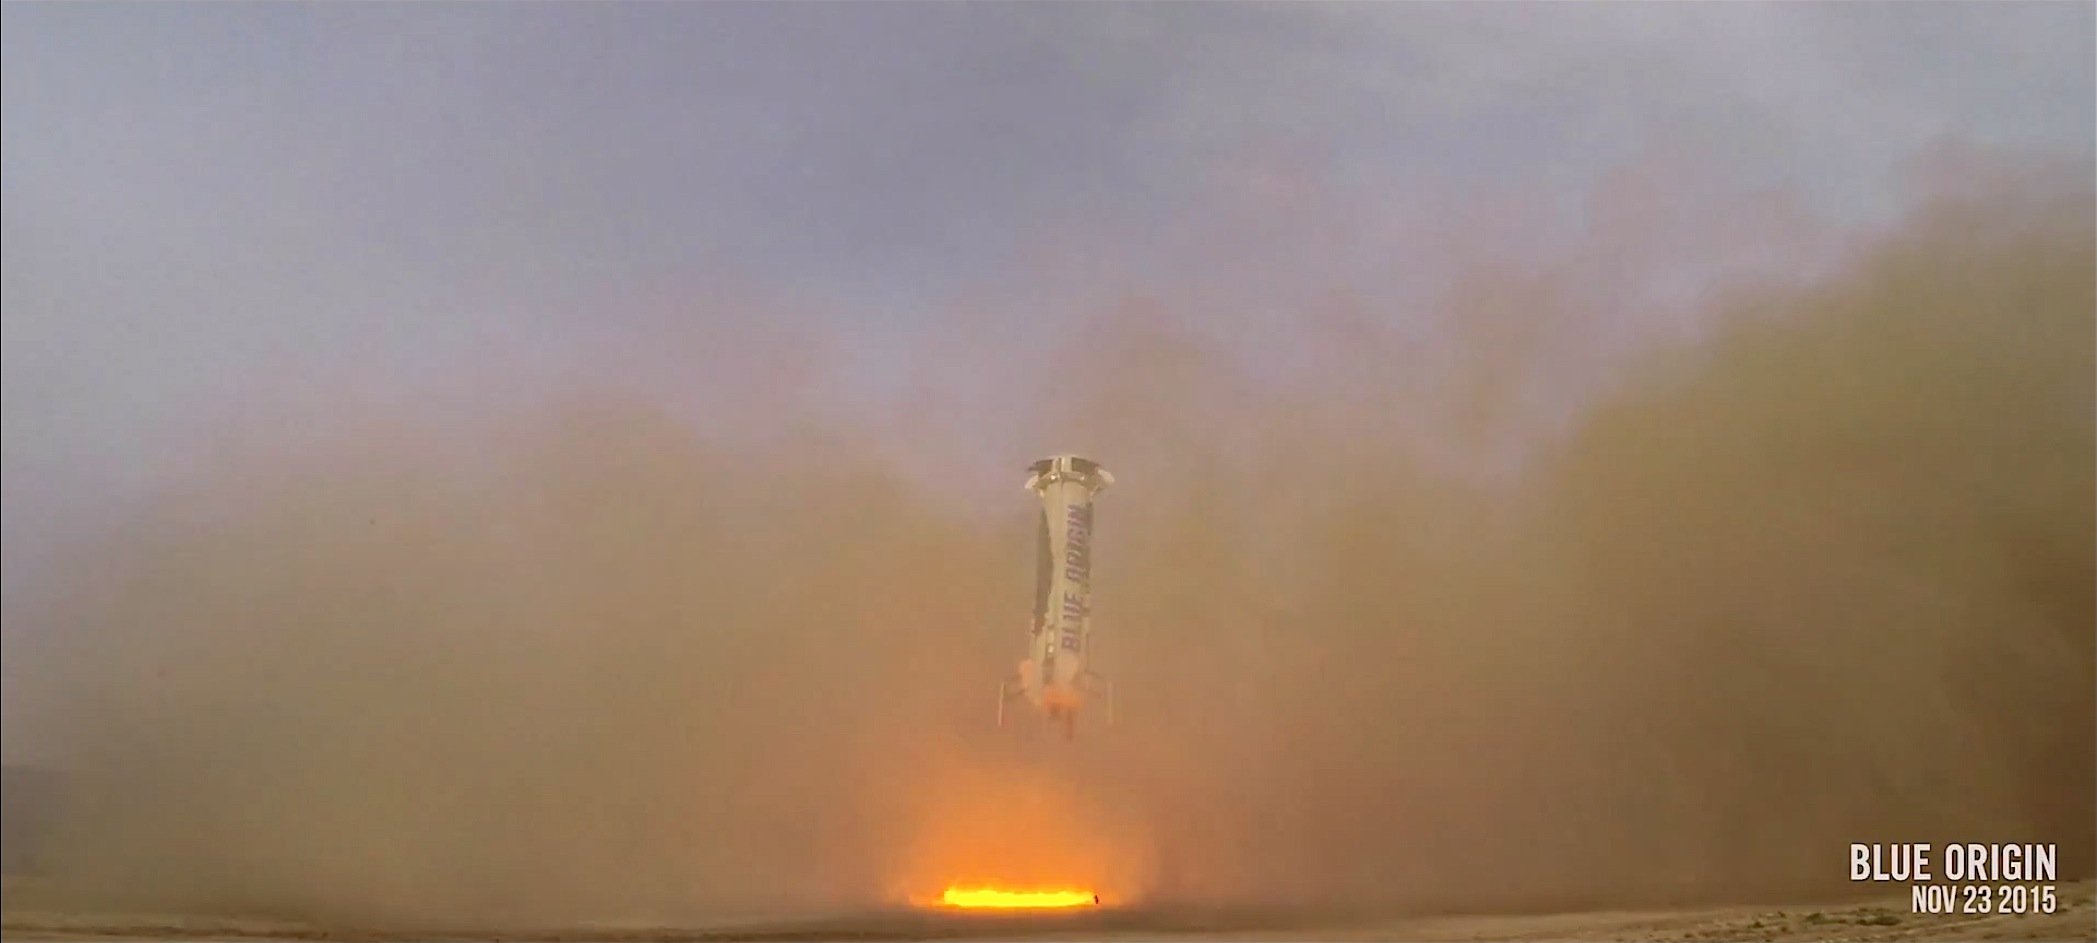 Dem Konkurrenten SpaceX ist es bislang nicht gelungen, eine Rakete nach dem Flug wieder senkrecht landen zu lassen. Hier im Bild zu sehen ist der Moment kurz vor dem Aufsetzen der Rakete New Shepard.